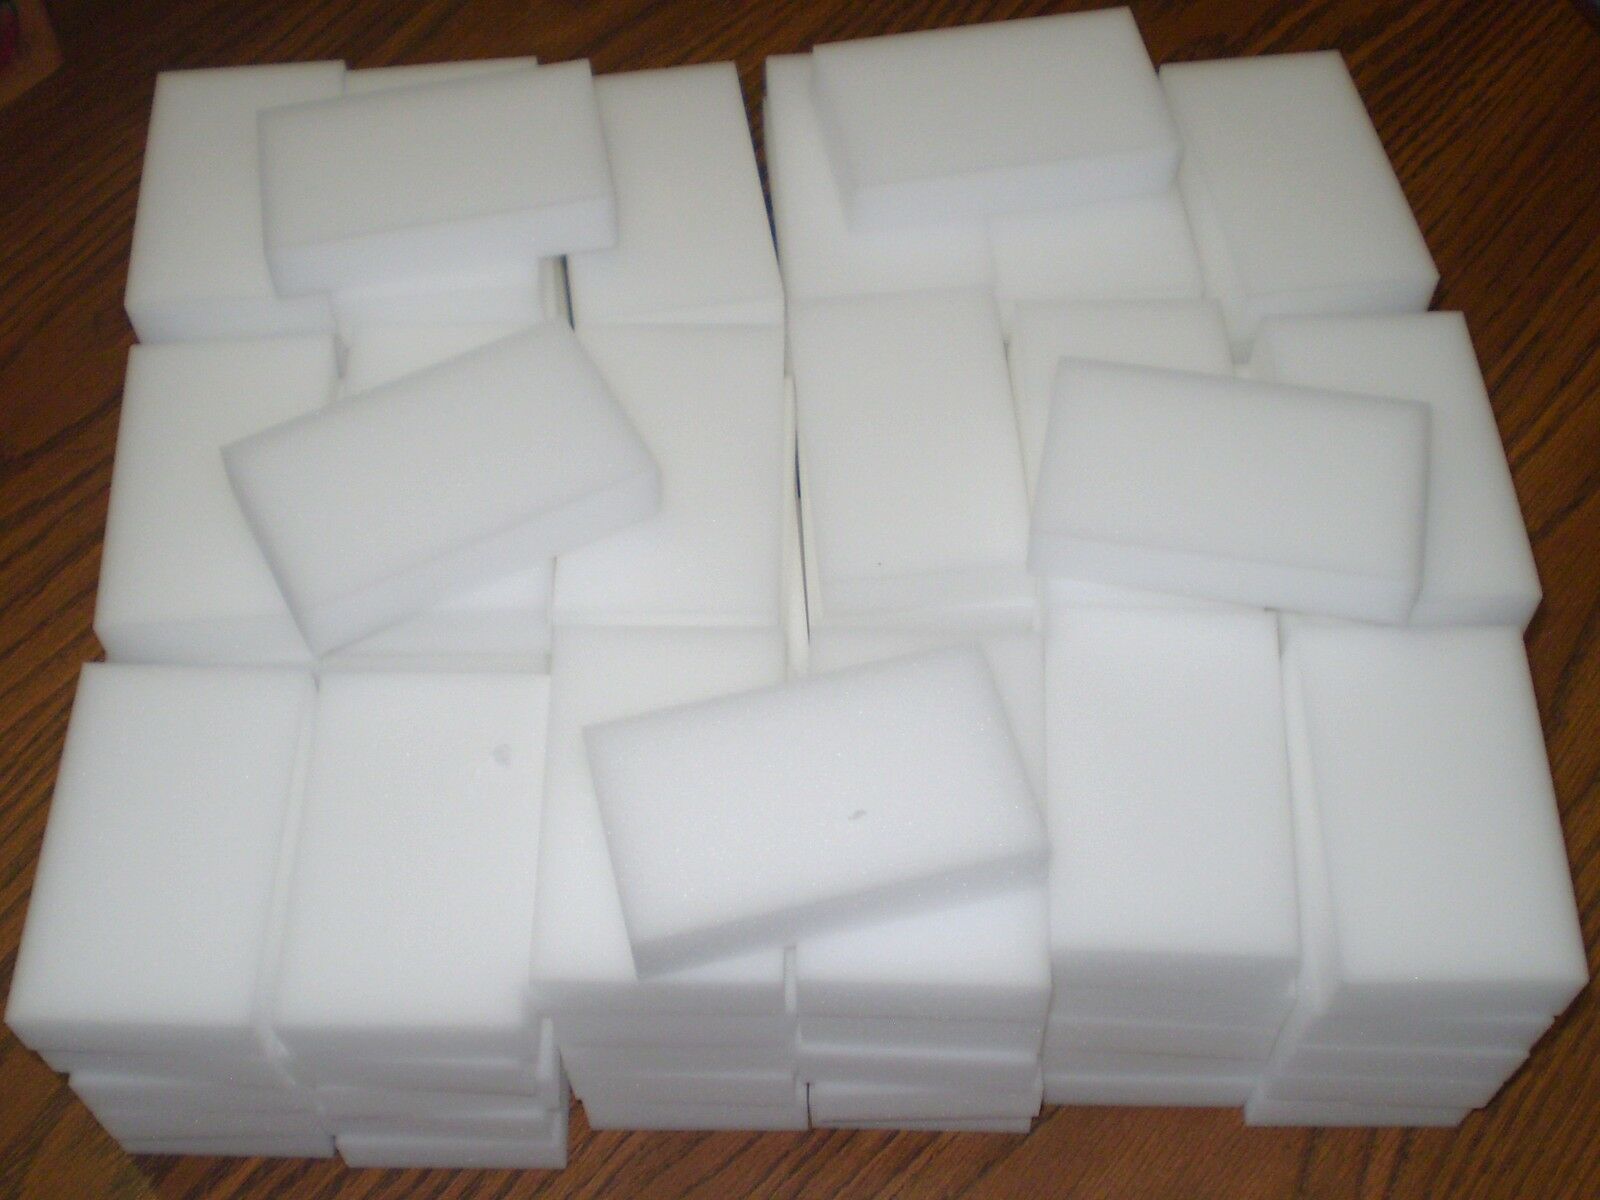 100 Bulk Pack Magic Sponge Eraser Melamine Cleaning Foam 3/4" Thick Ohio Ebayer